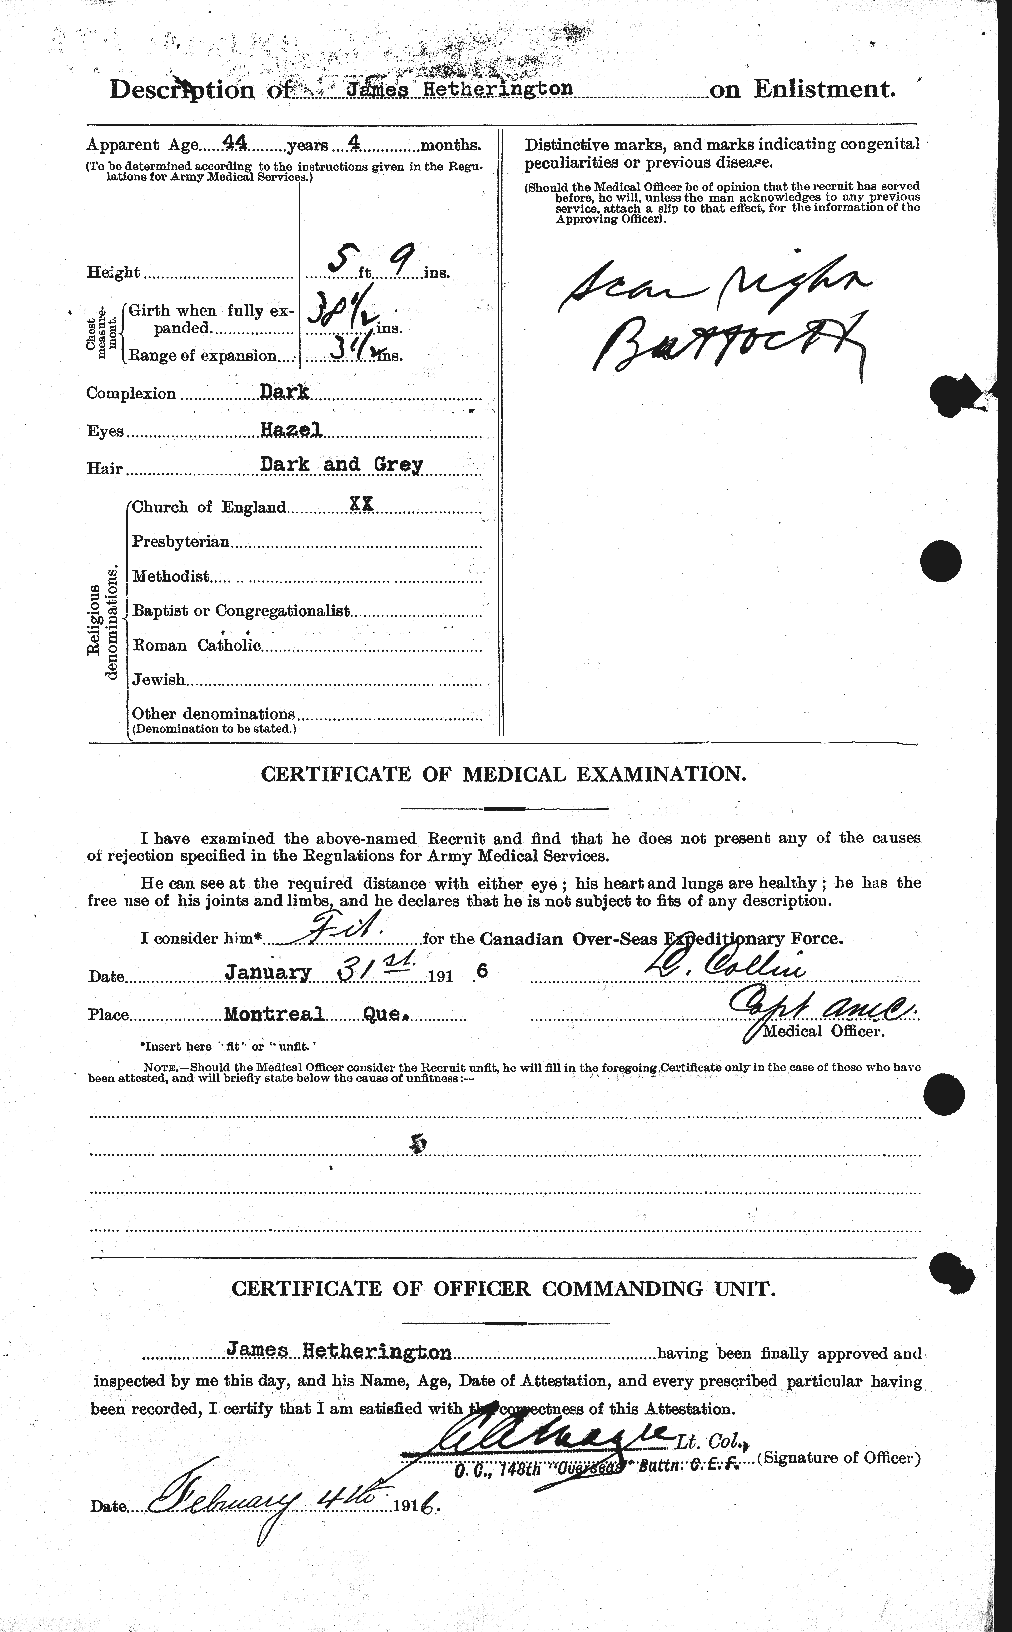 Dossiers du Personnel de la Première Guerre mondiale - CEC 390702b